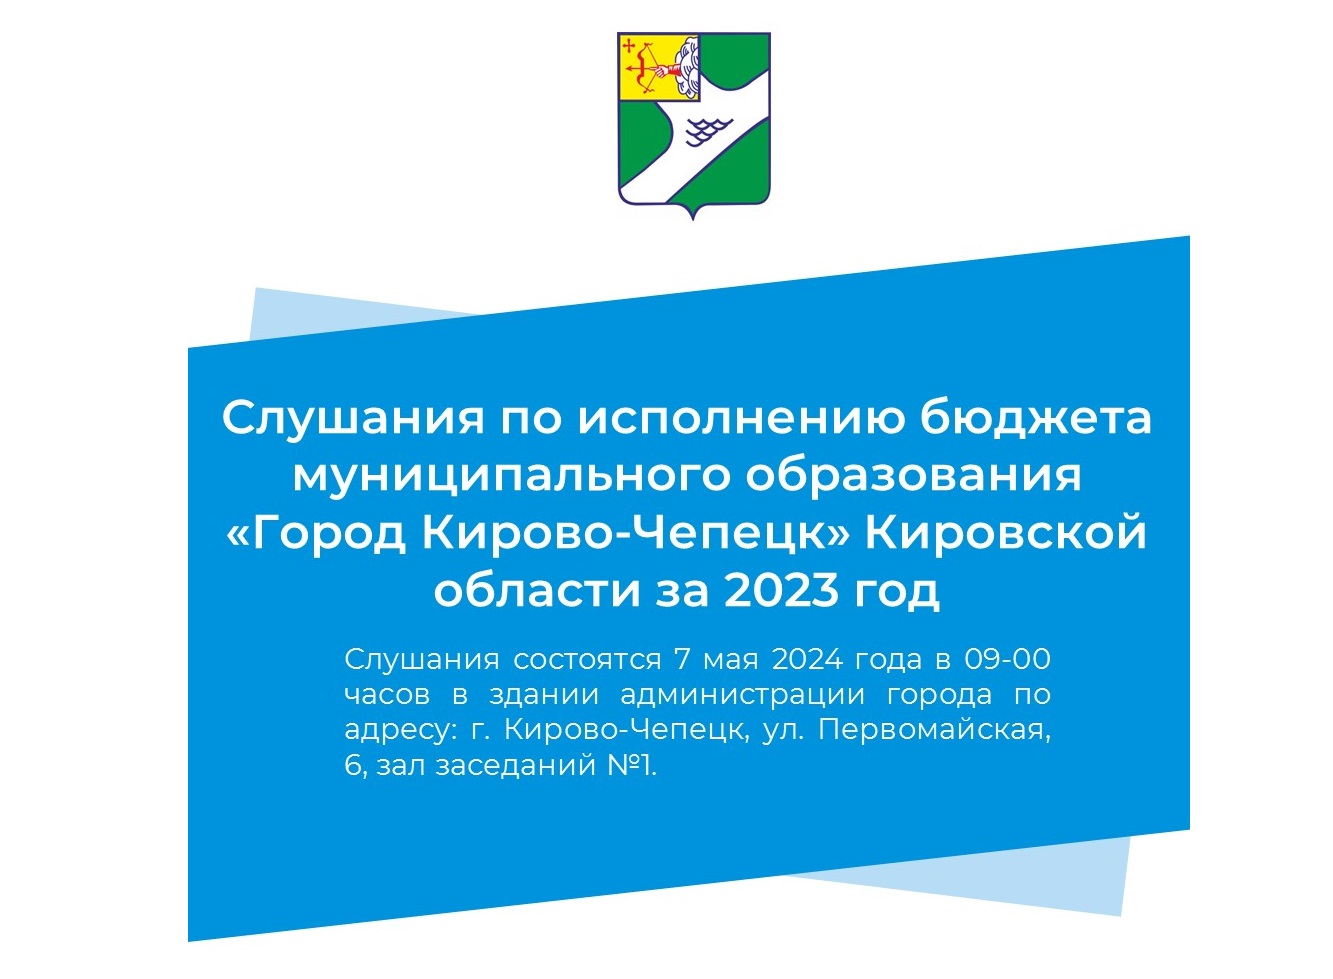 Слушания по исполнению бюджета муниципального образования «Город Кирово-Чепецк» Кировской области за 2023 год.